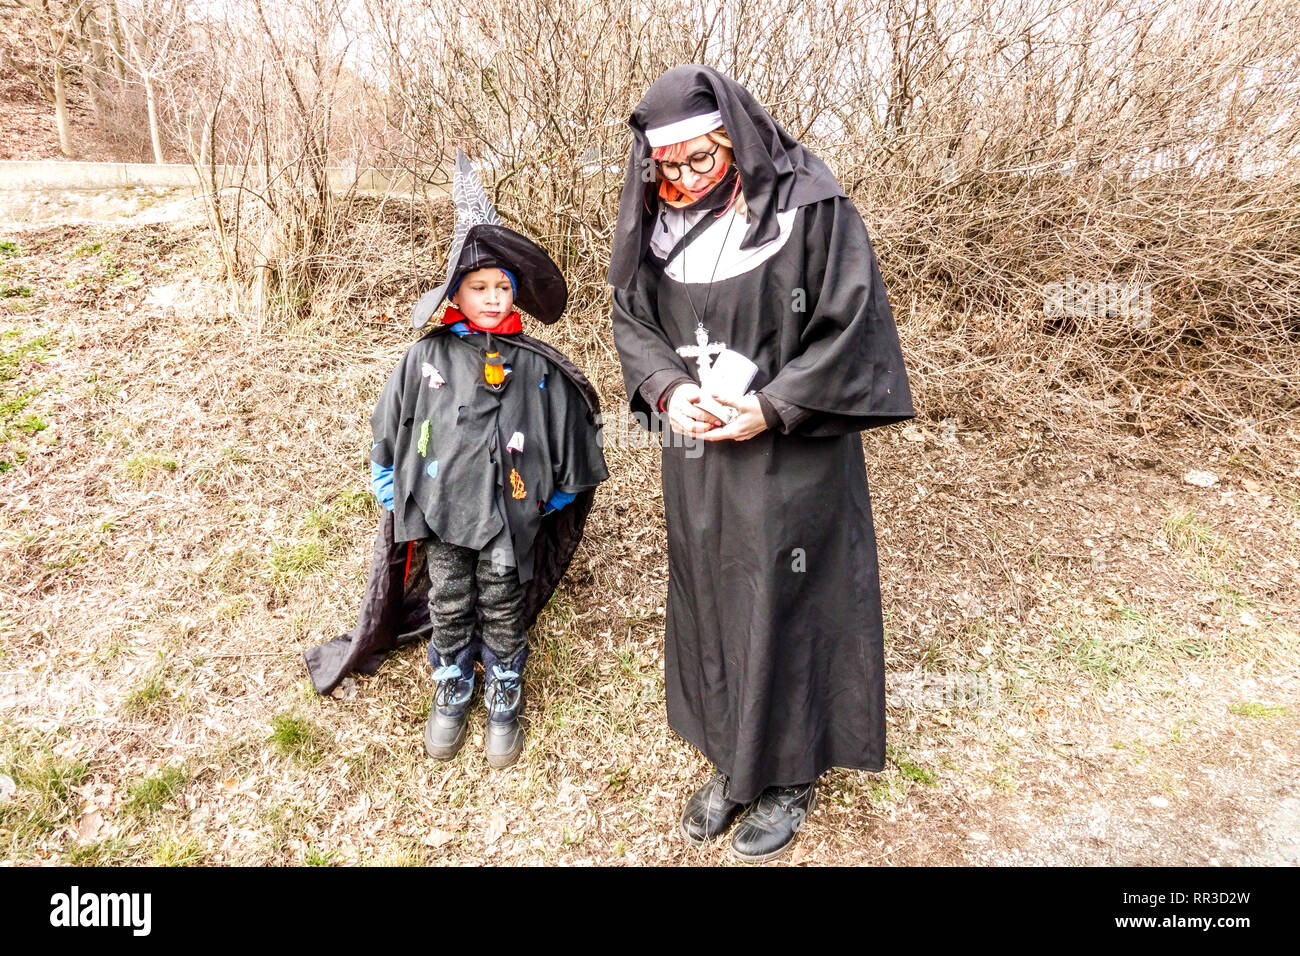 République tchèque carnaval - masopust, masque de femme, vêtue comme une nonne et le garçon, République Tchèque Banque D'Images